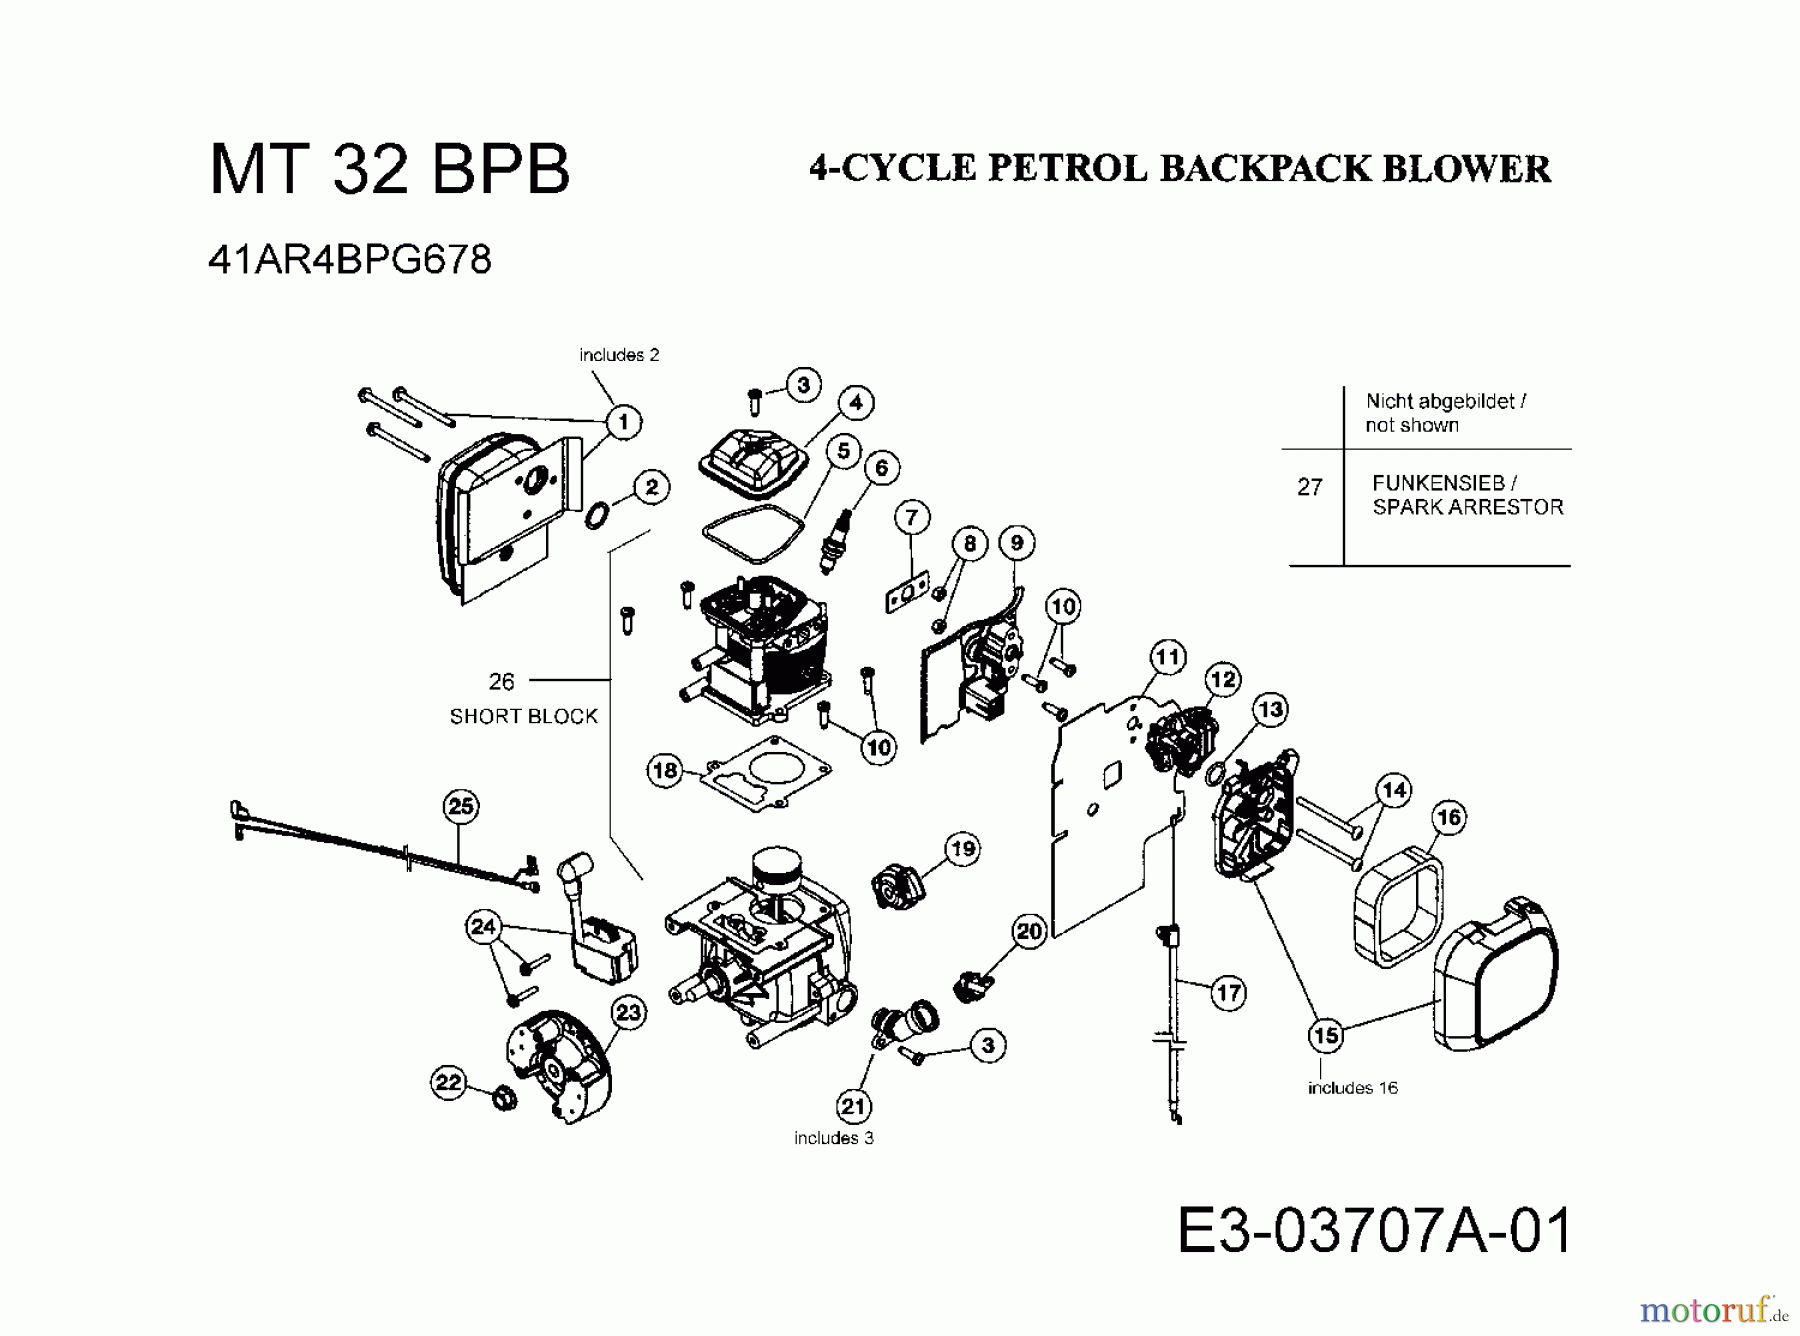  MTD Leaf blower, Blower vac MT 32 BPB 41AR4BPG678  (2008) Engine